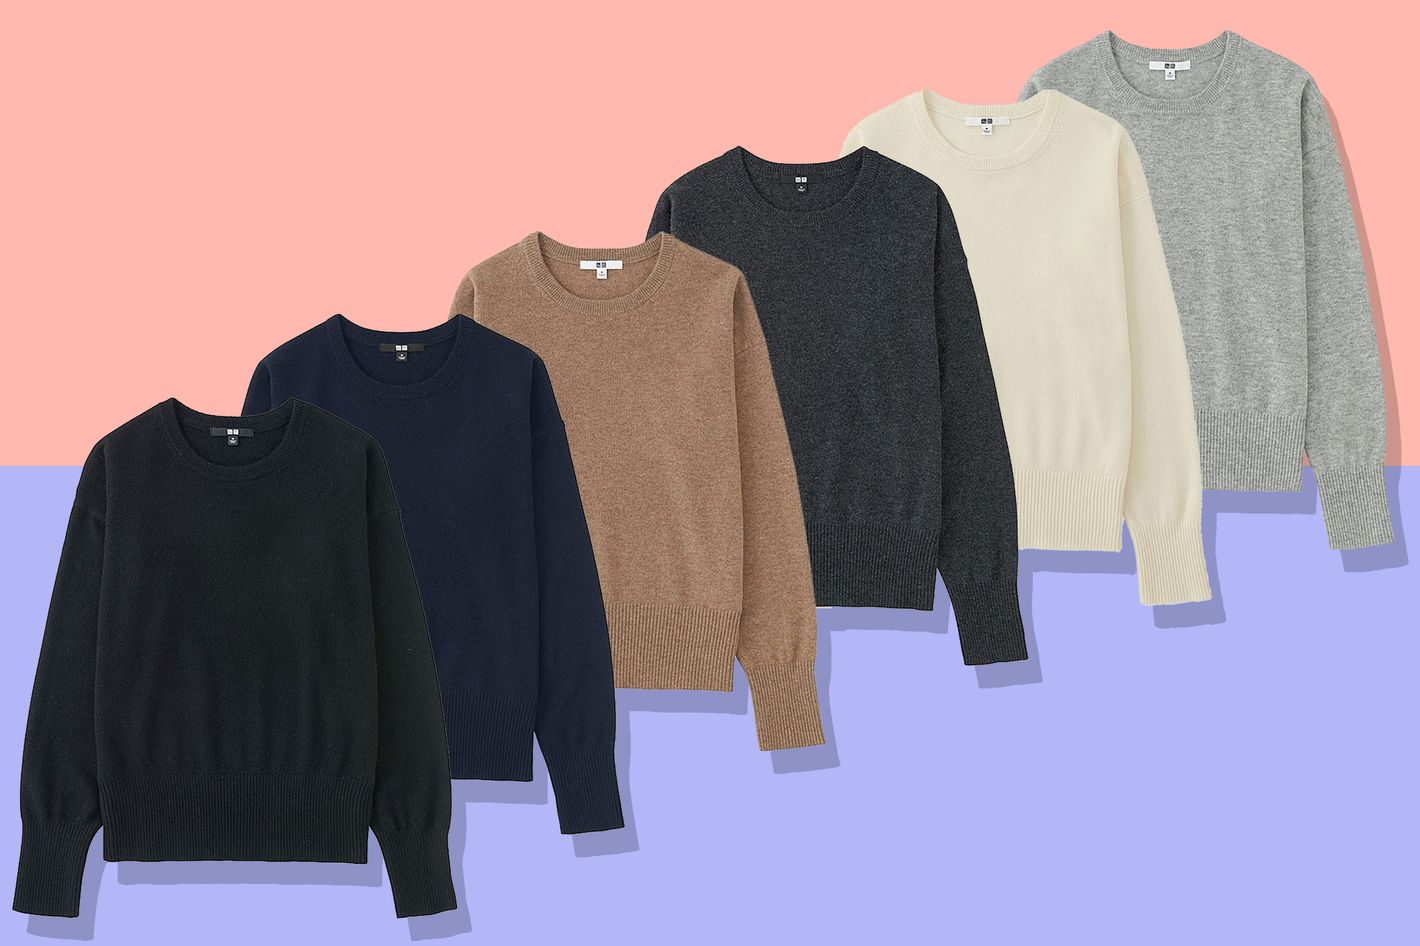 Uniqlo Cashmere Sweater on Sale 2017